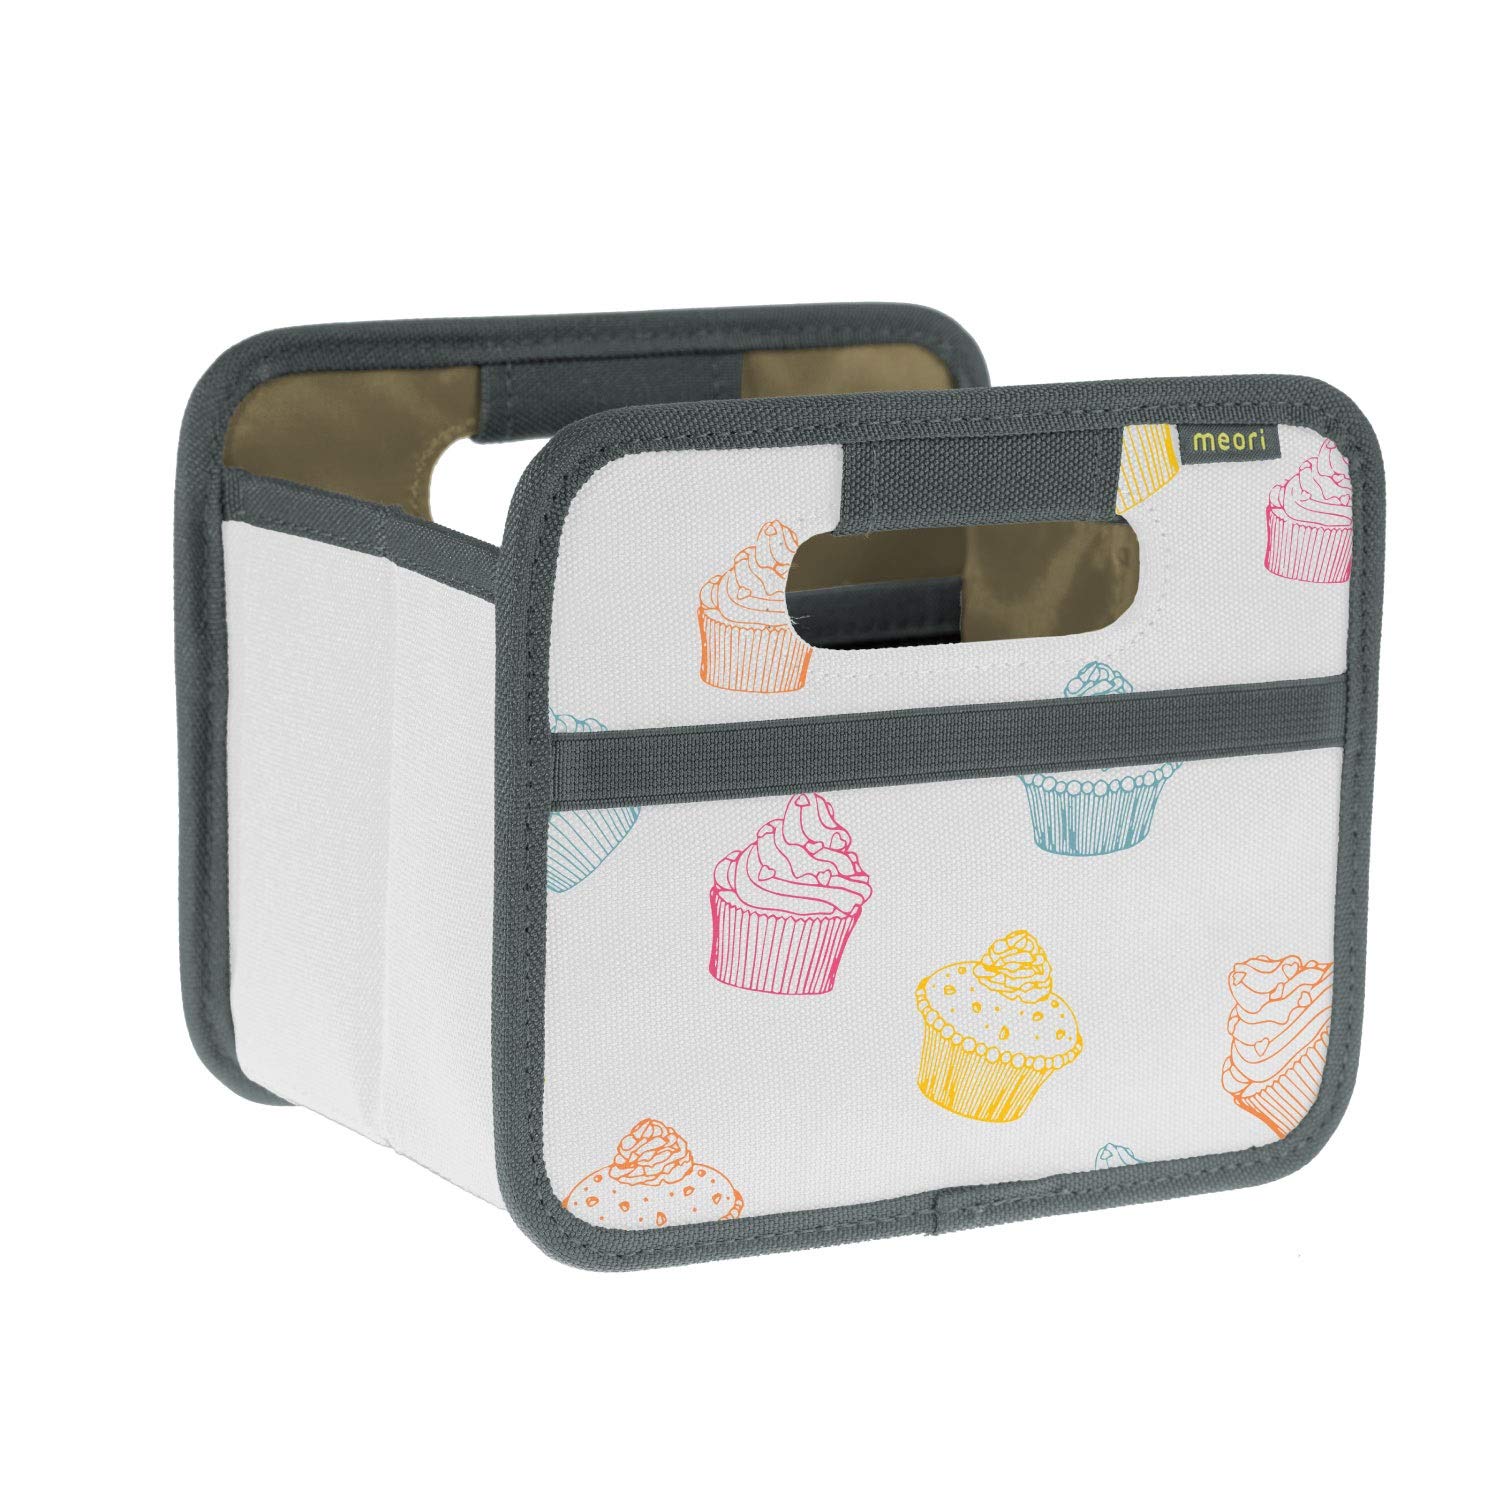 meori Faltbox Mini mit Motiv Cupcake – Kleine Klappbox mit Griffen – Geschenkidee und Allzweck Aufbewahrungslösung - A100310 - 16,5 x 12,5 x 14 cm von meori